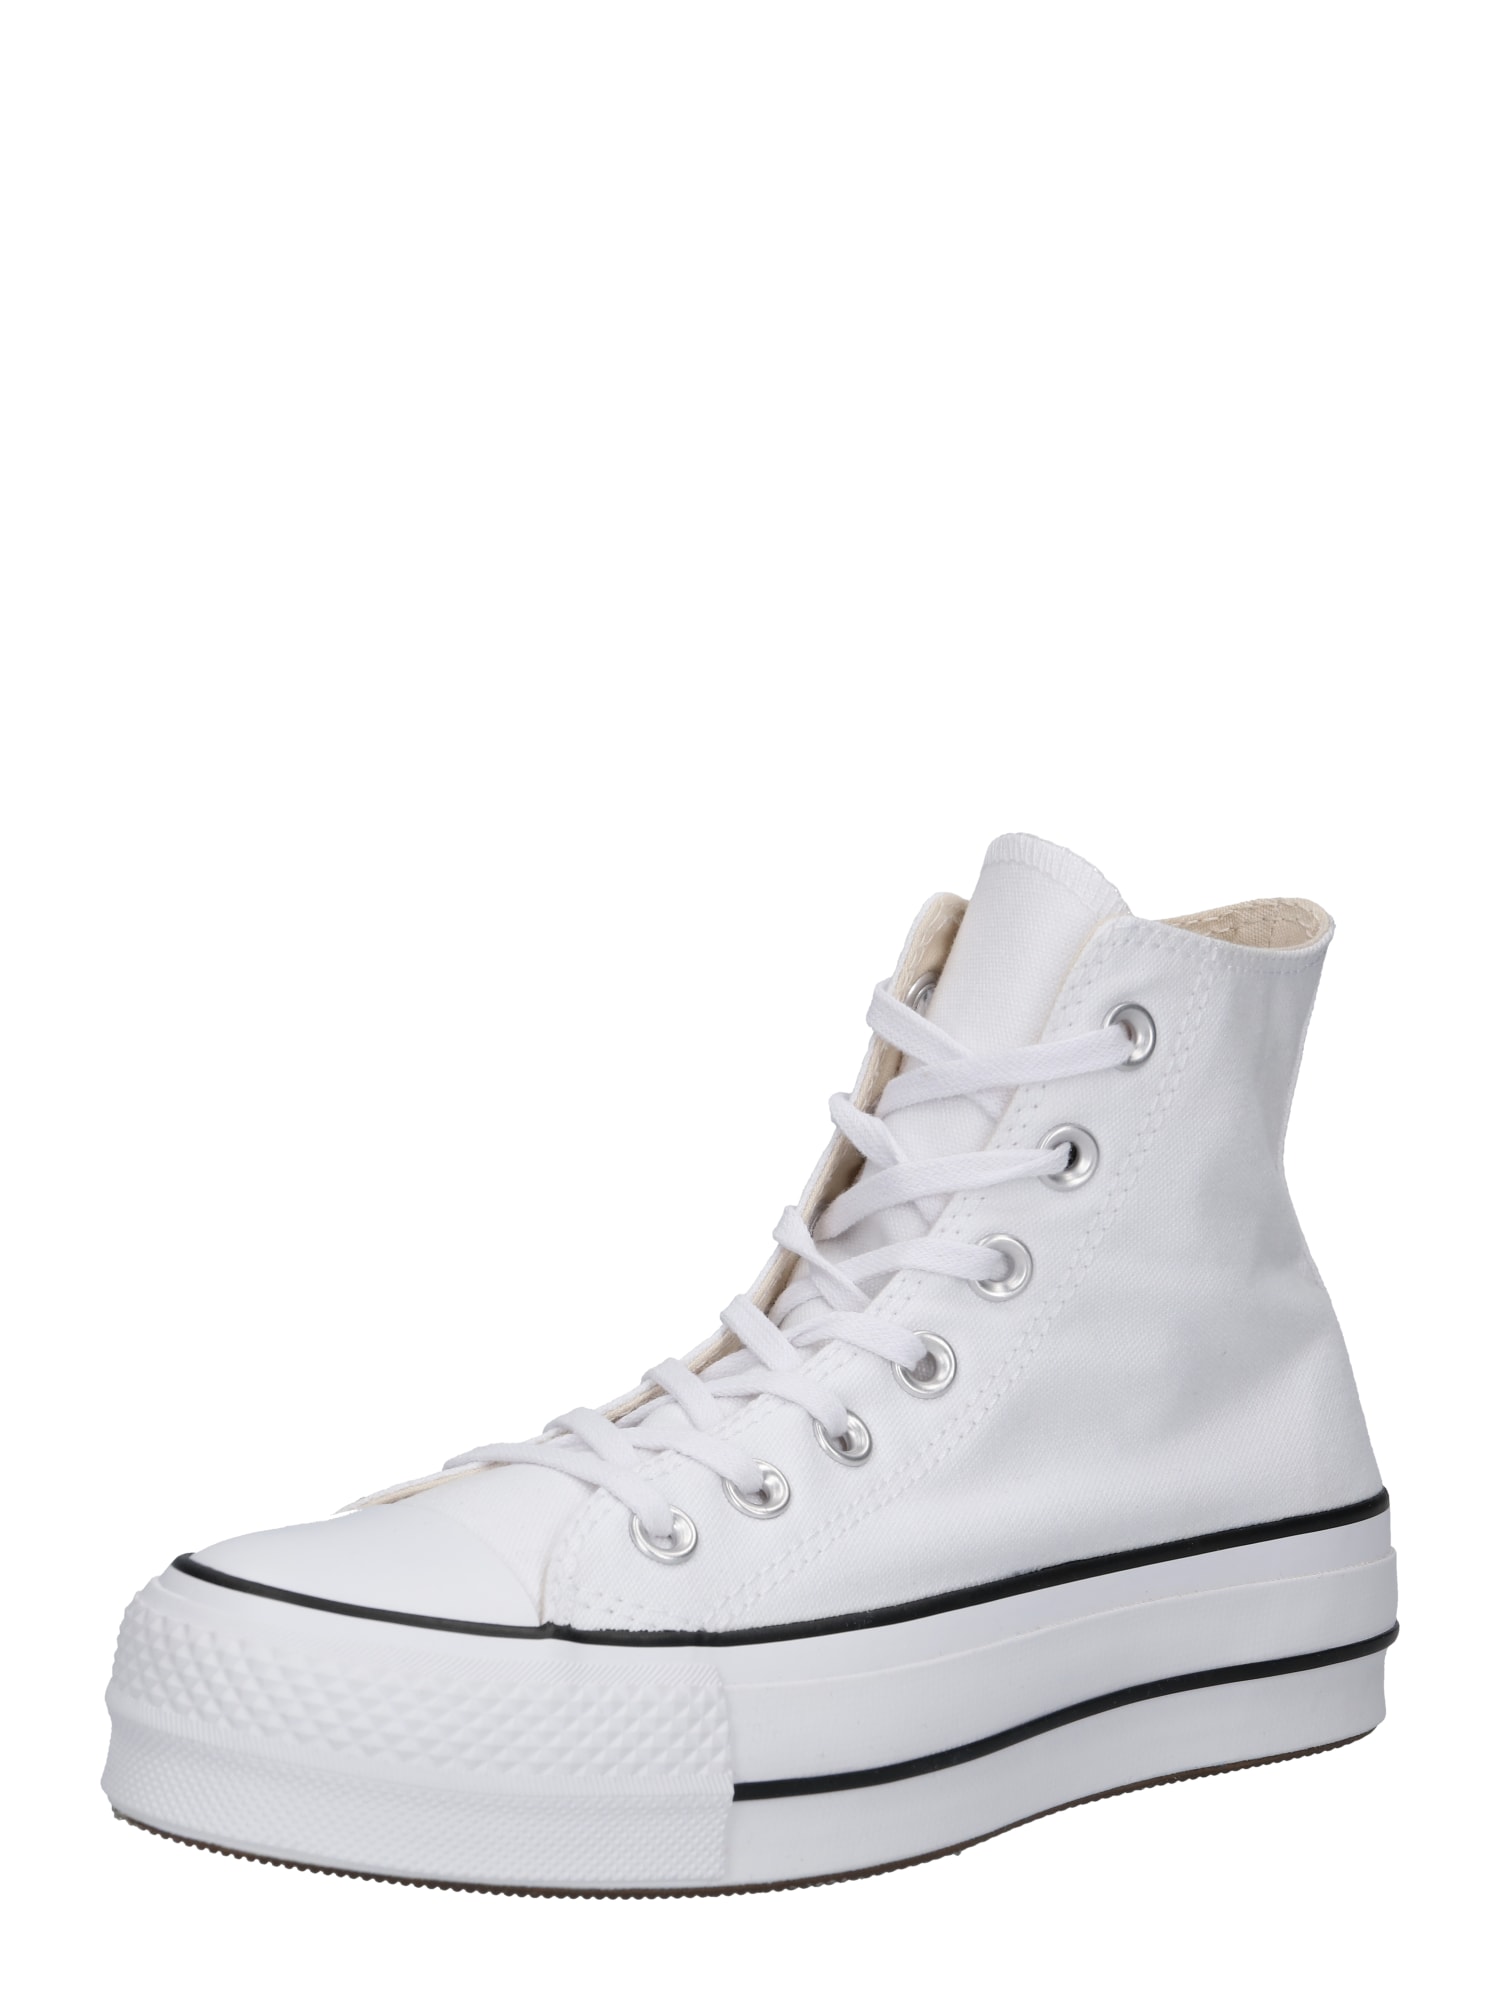 Converse CONVERSE Sneaker 'Chuck Taylor All Star' schwarz / weiß